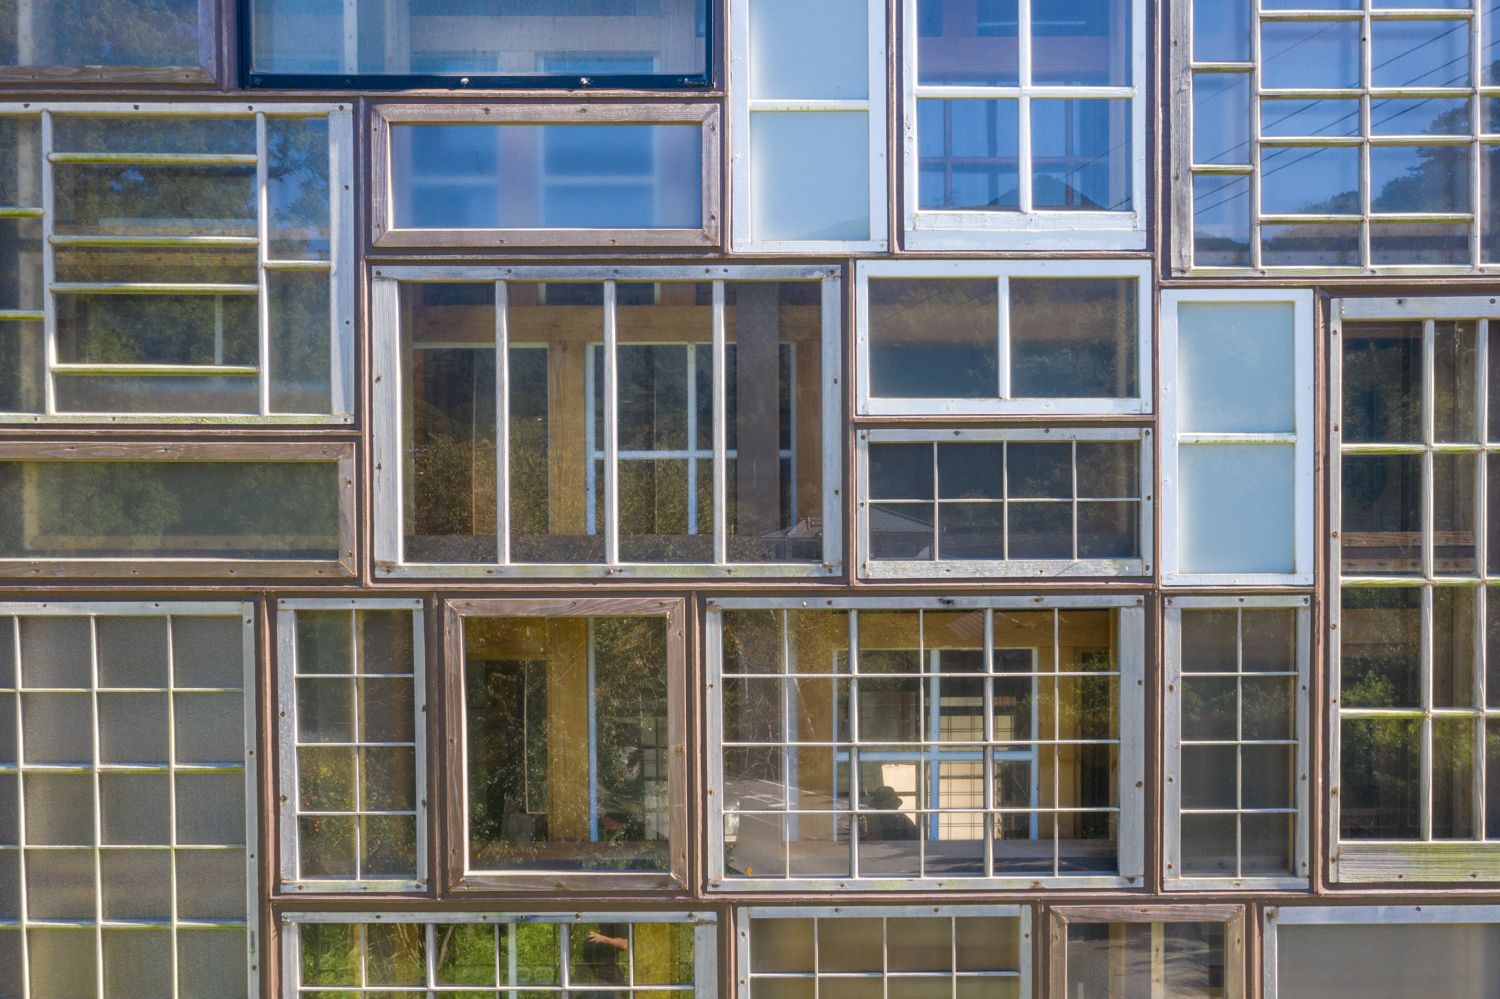 Jendela bangunan ini menggunakan berbagai jendela bekas yang ditemukan di kota